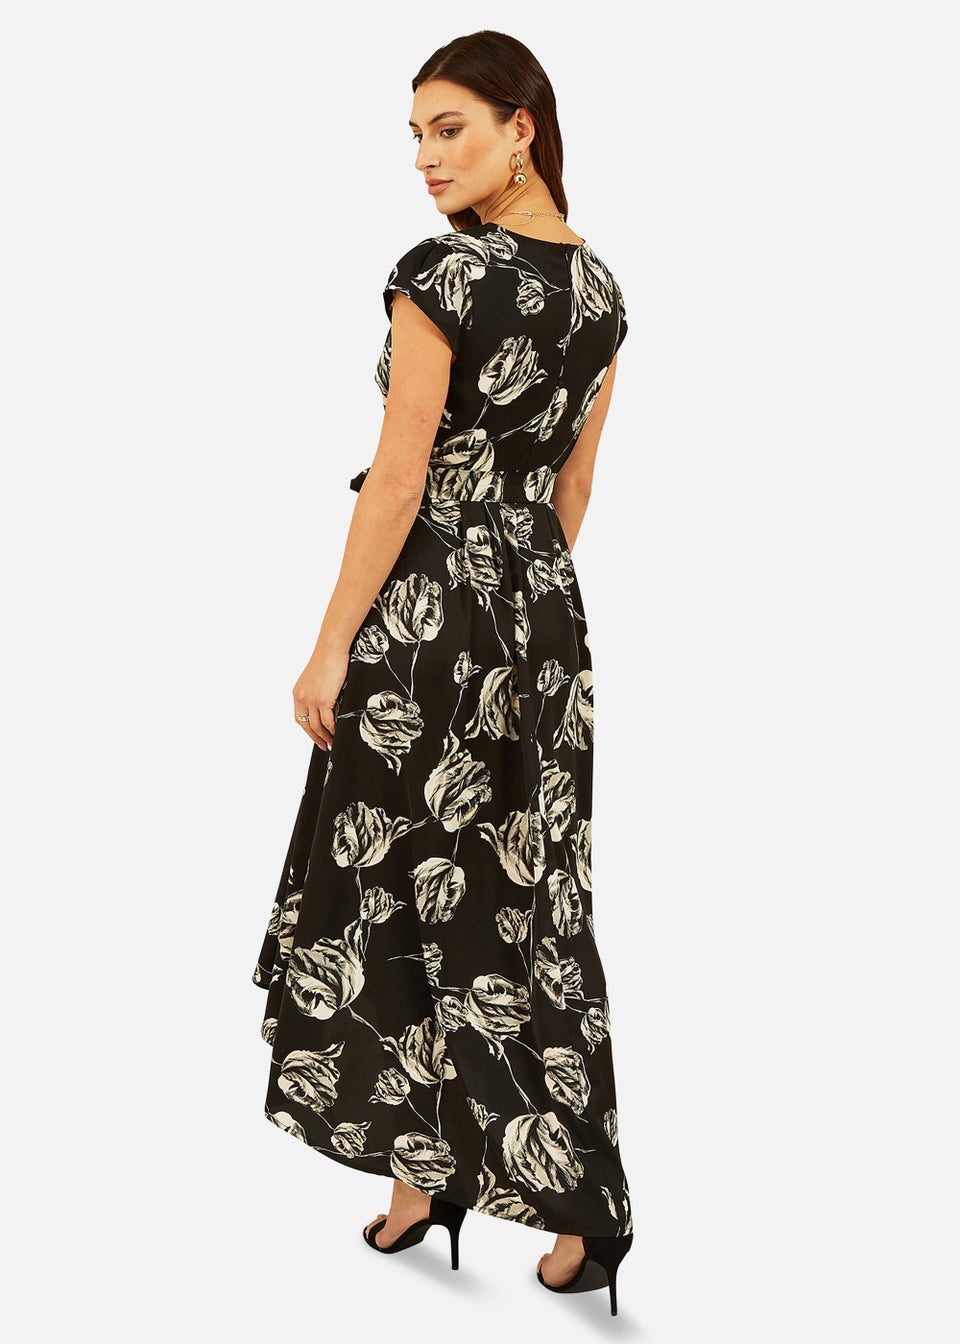 Mela Rose Print Dipped Hem Wrap Dress In Black